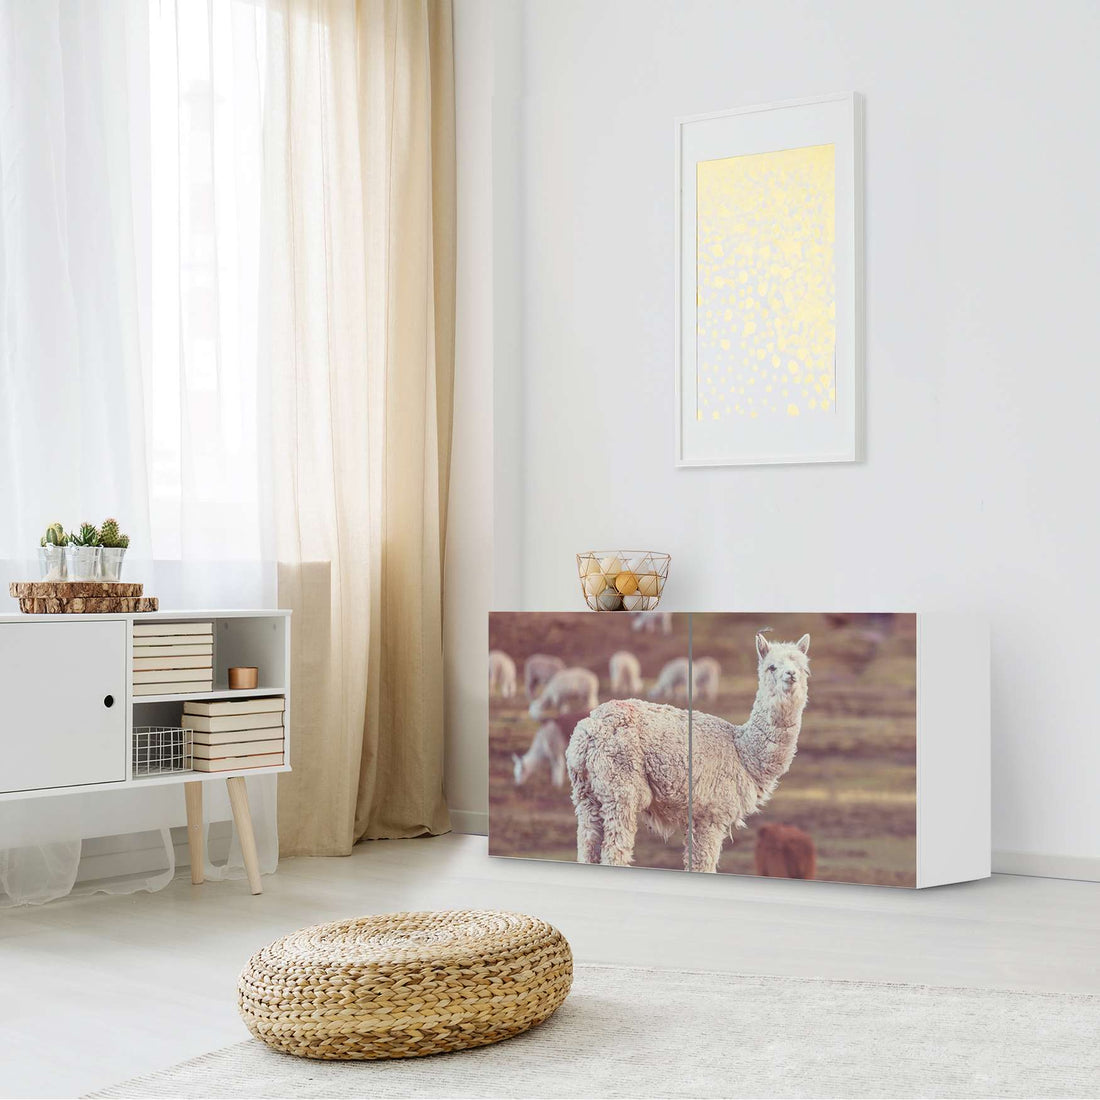 Folie für Möbel Pako - IKEA Besta Regal Quer 2 Türen - Wohnzimmer